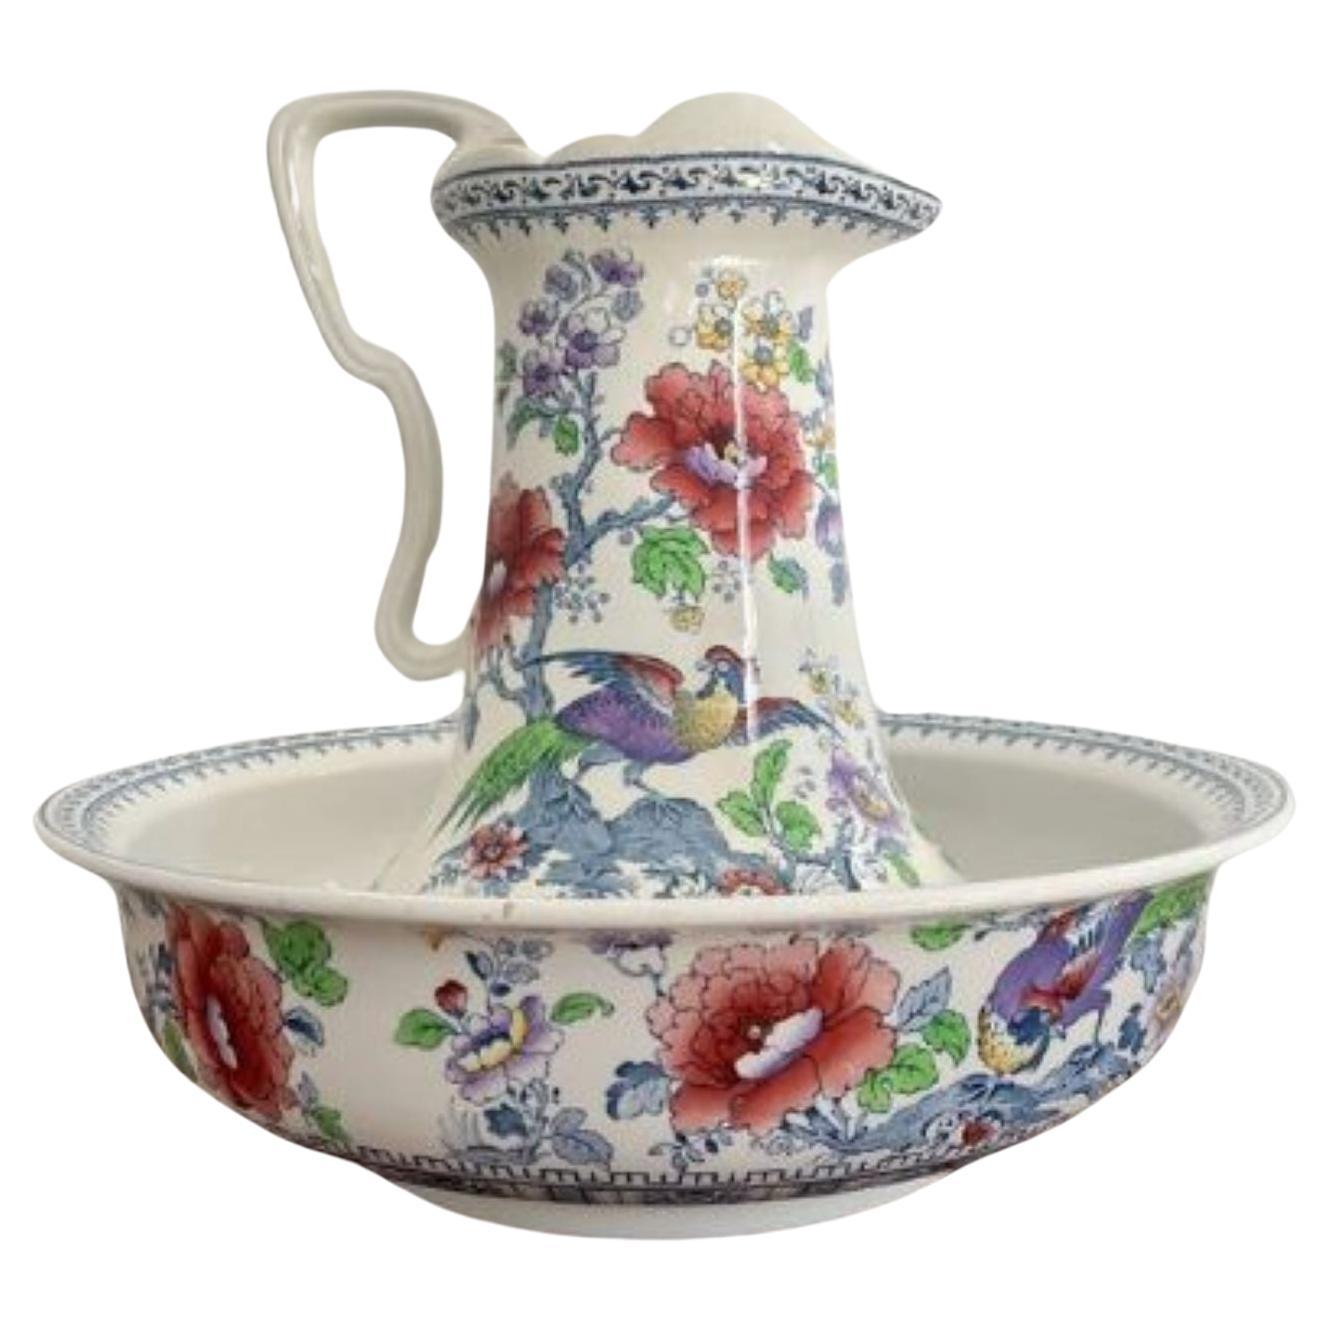 Lovely antique Edwardian jug and bowl set  For Sale